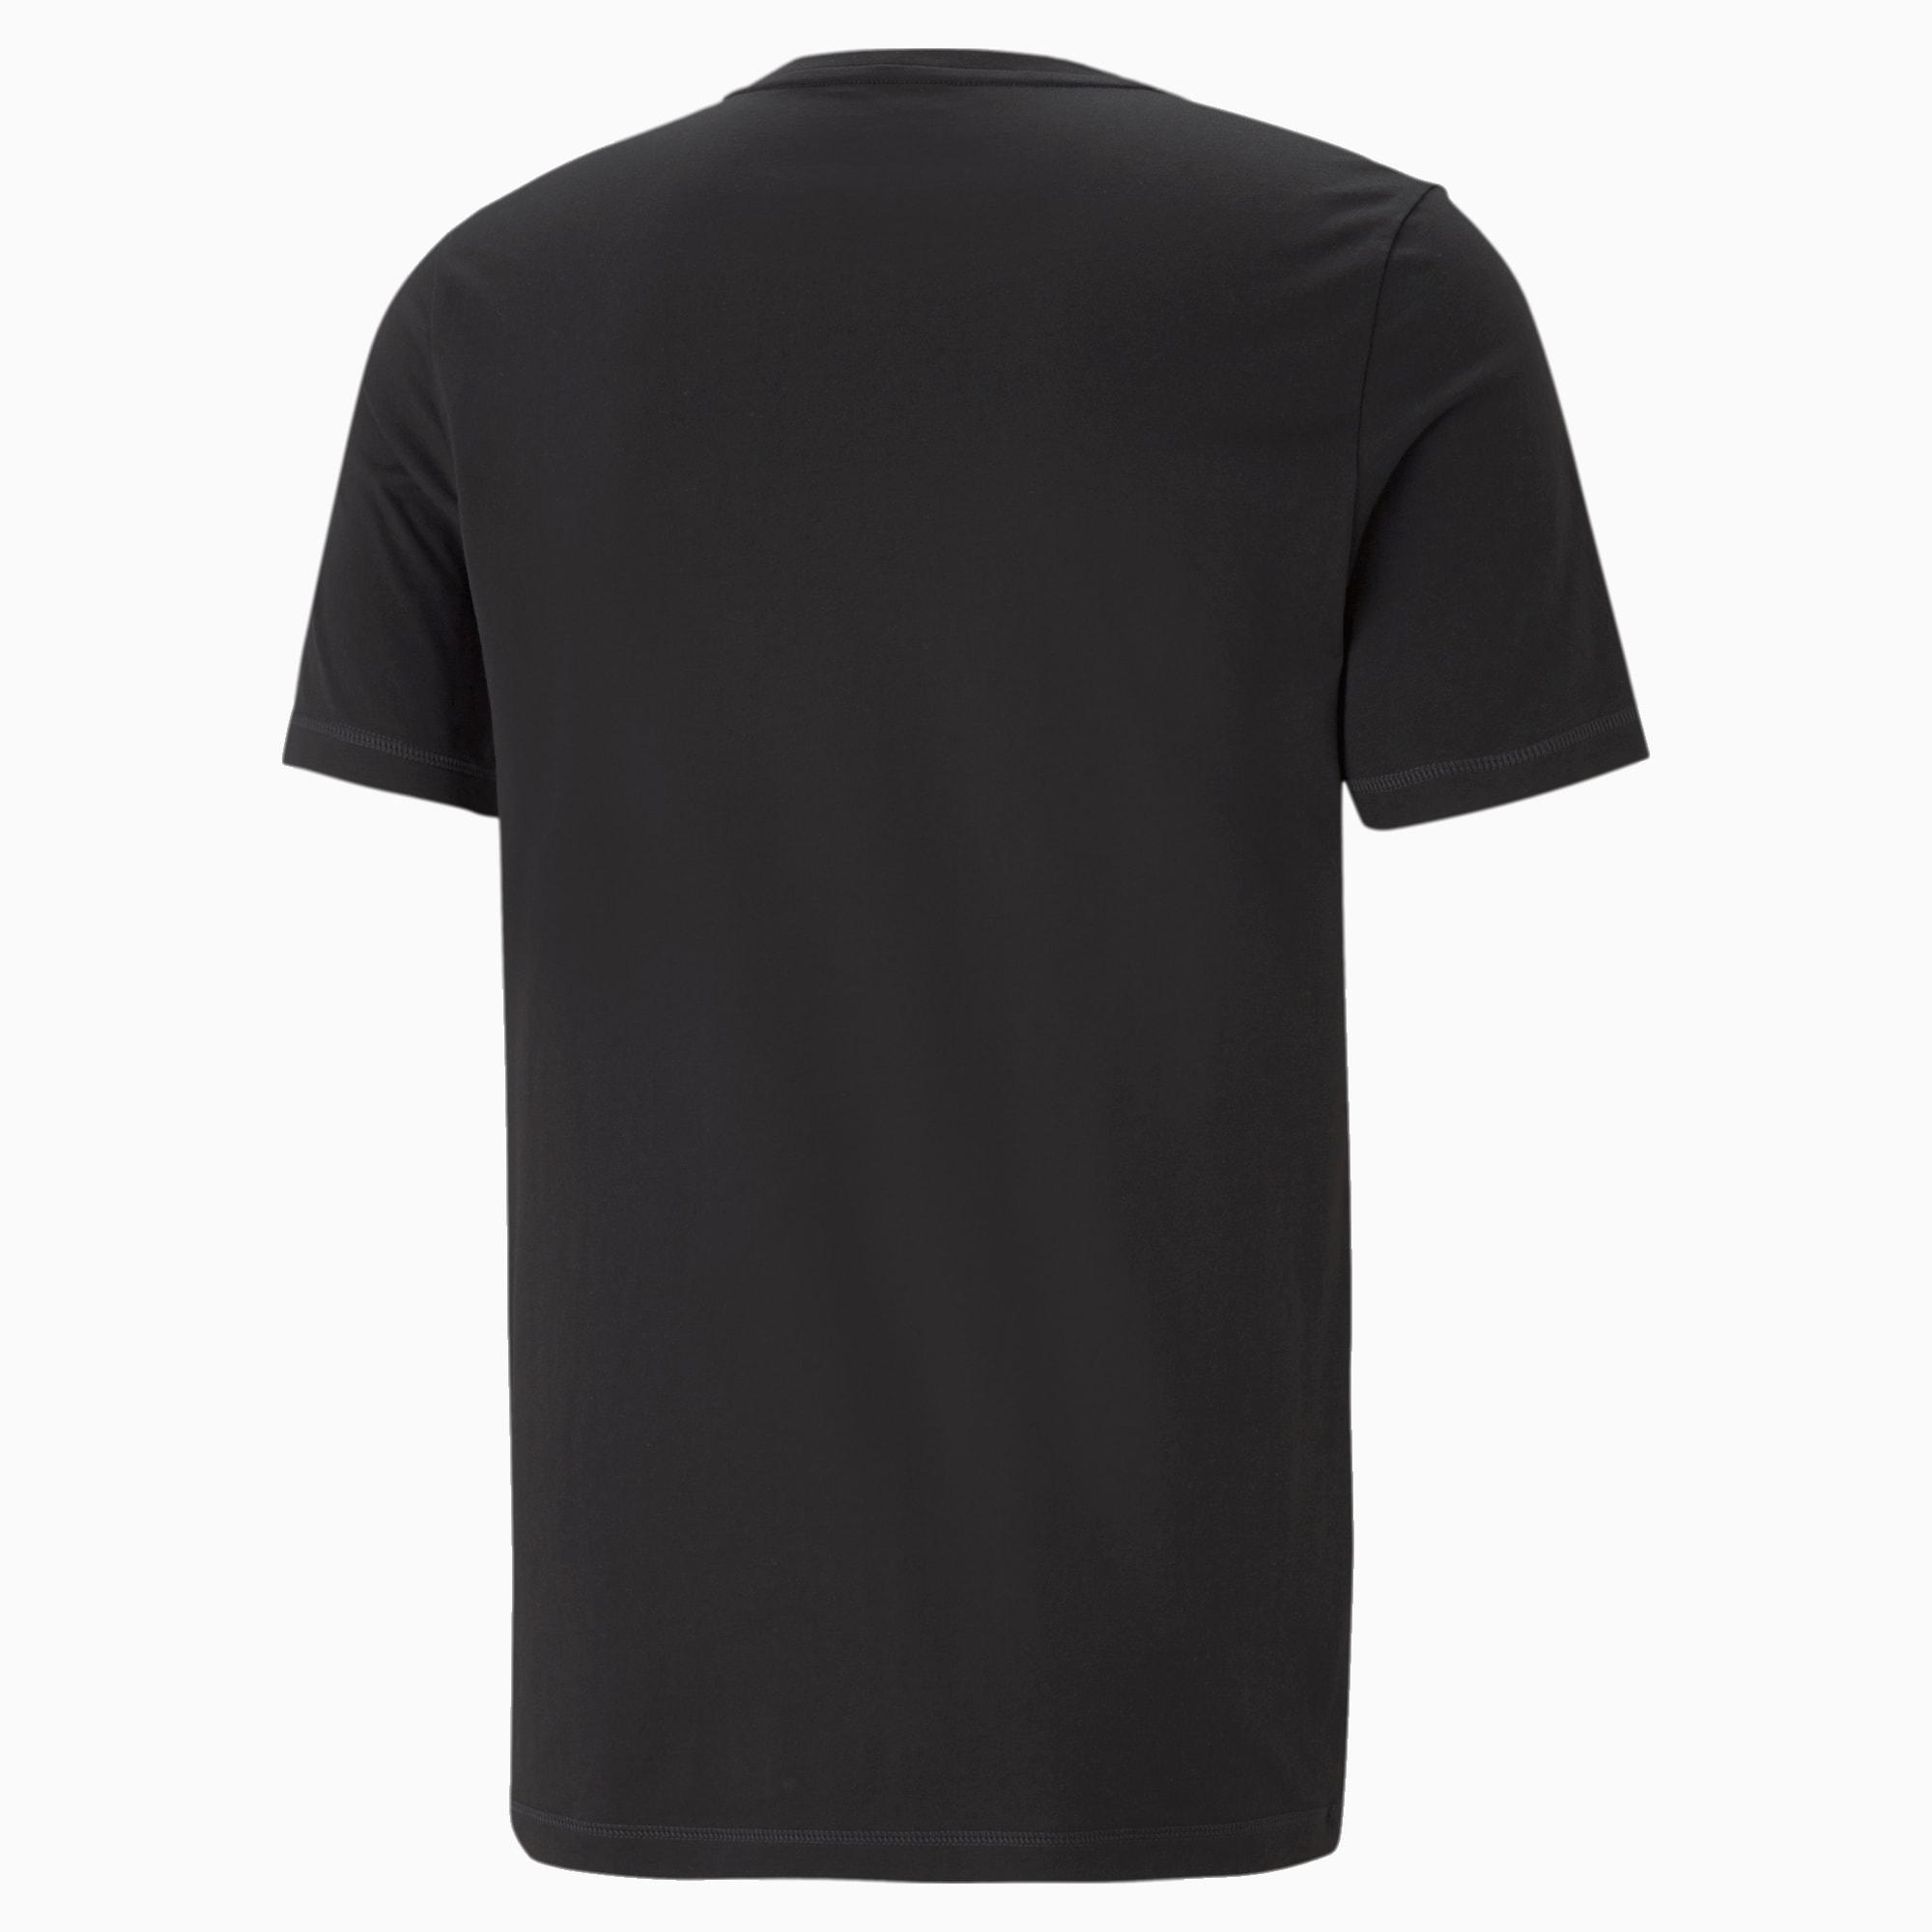 PUMA Active Soft Men's T-Shirt, Black, Size L, Clothing